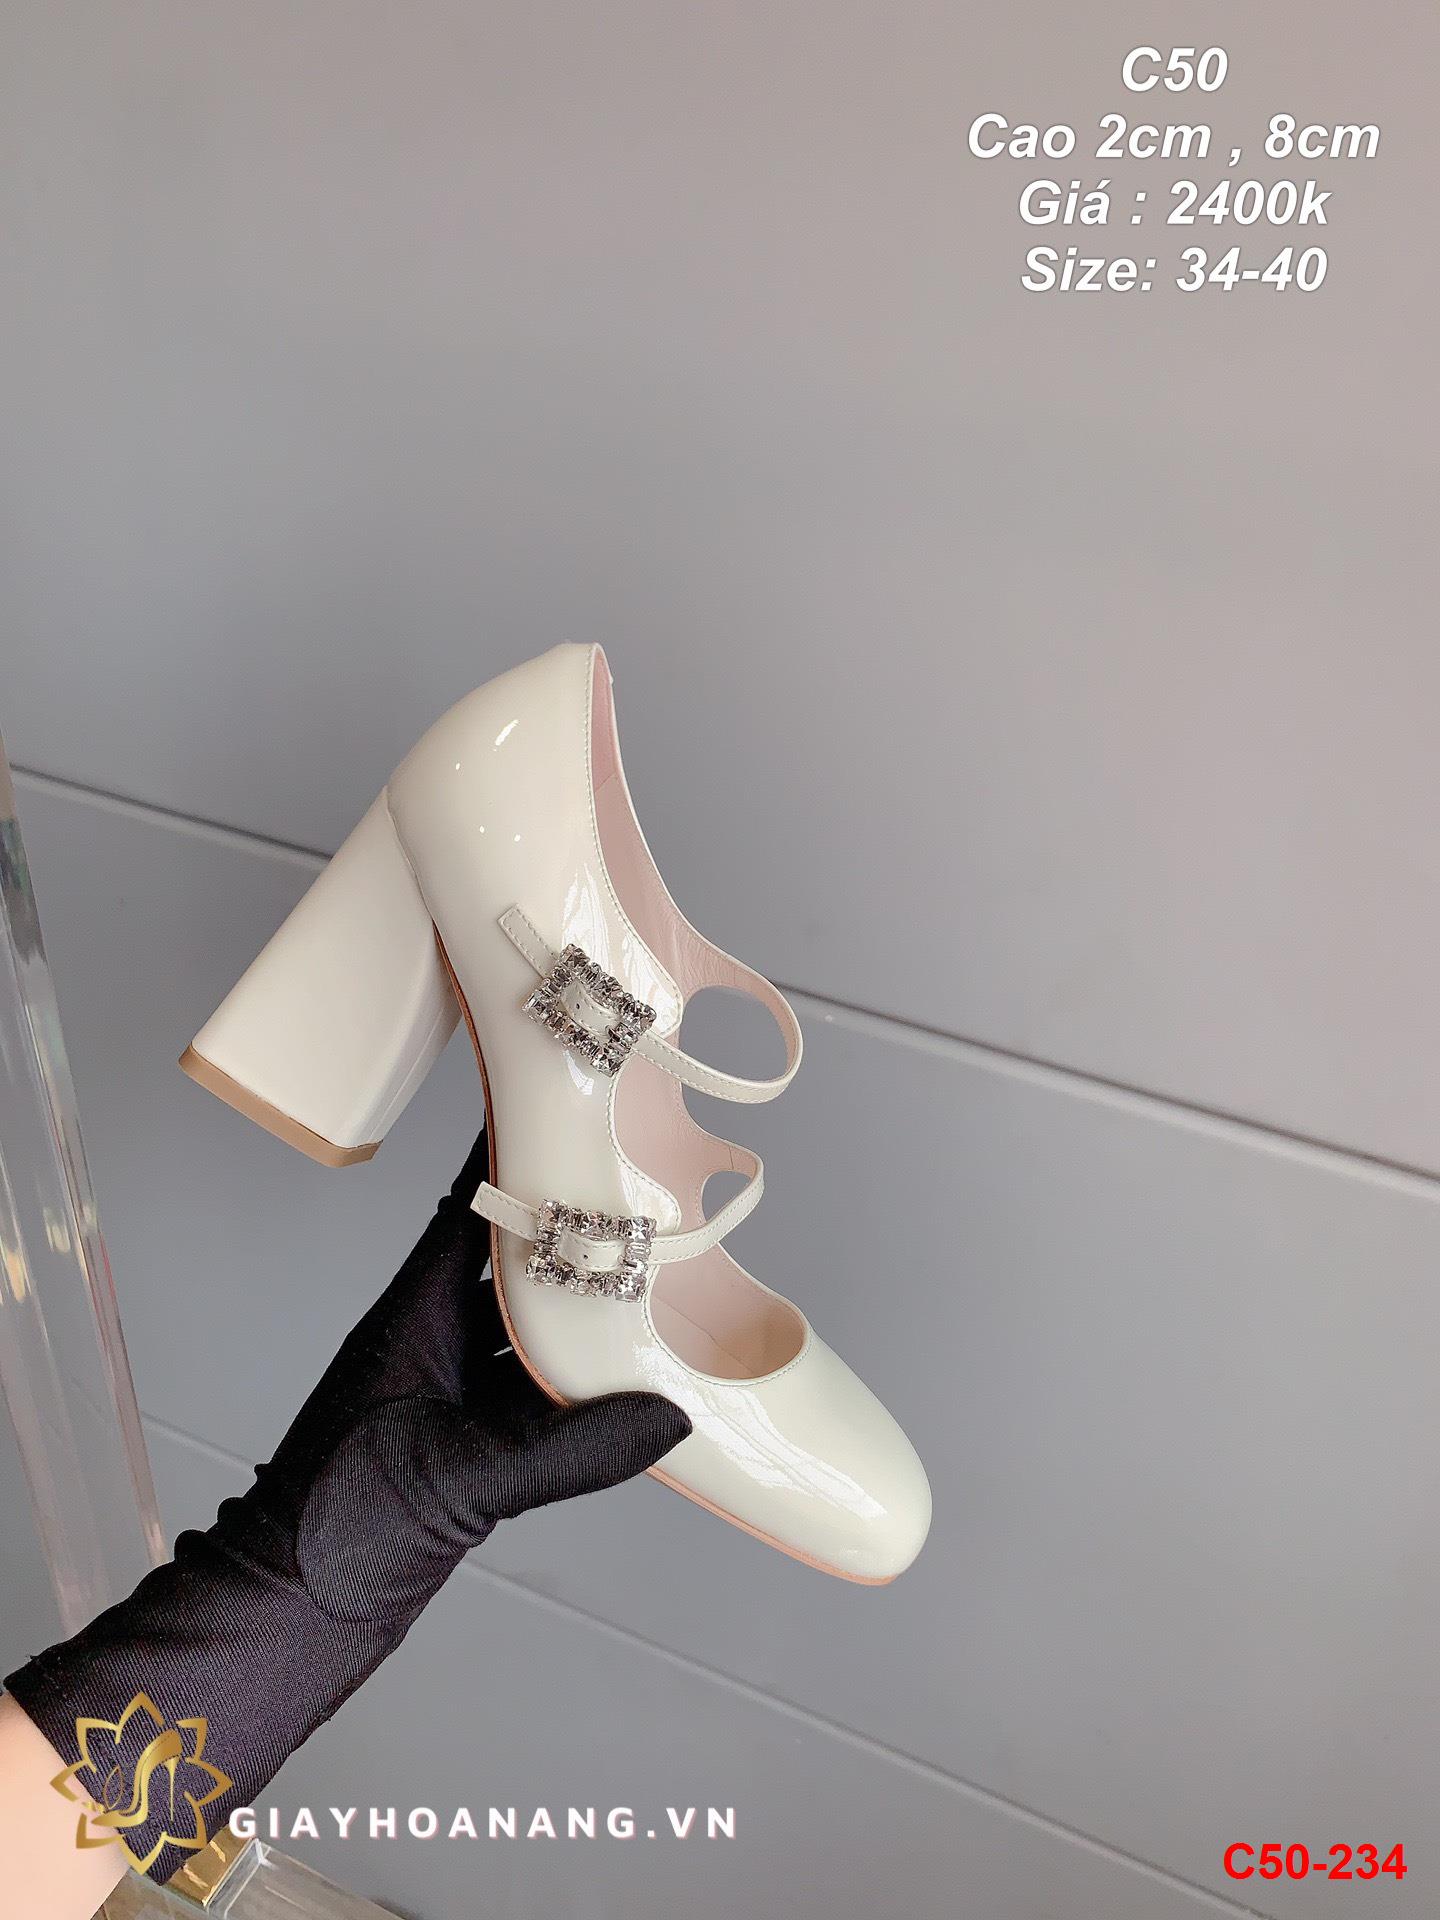 C50-234 Miu Miu giày cao 2cm , 8cm siêu cấp